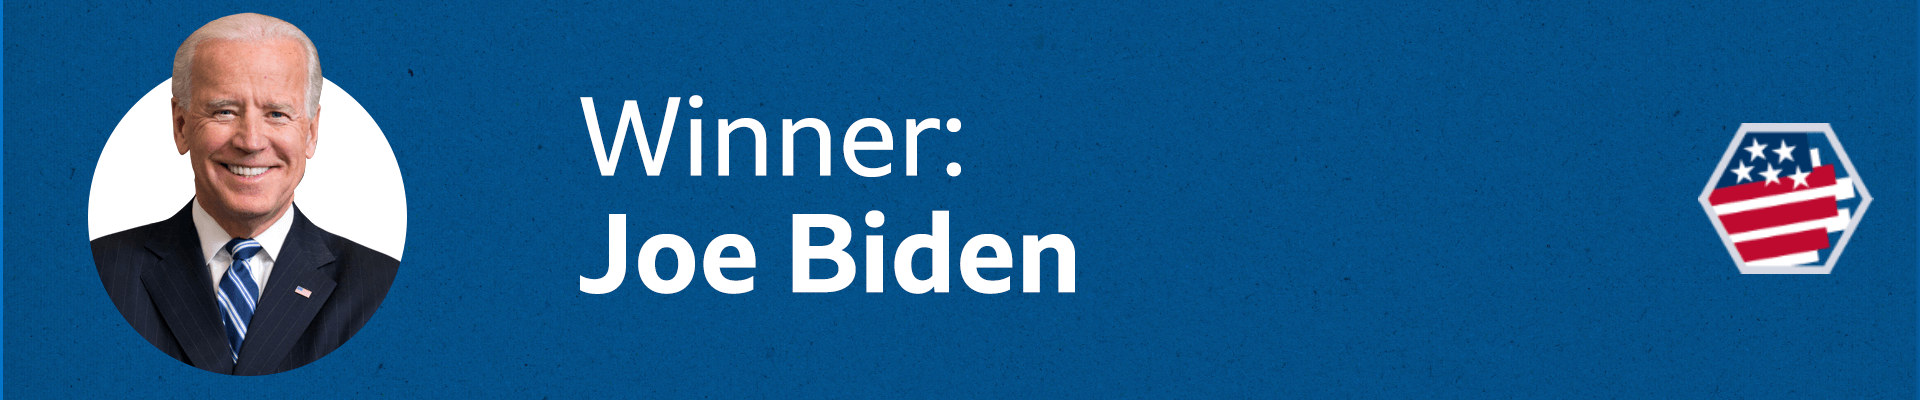 Winner: Joe Biden